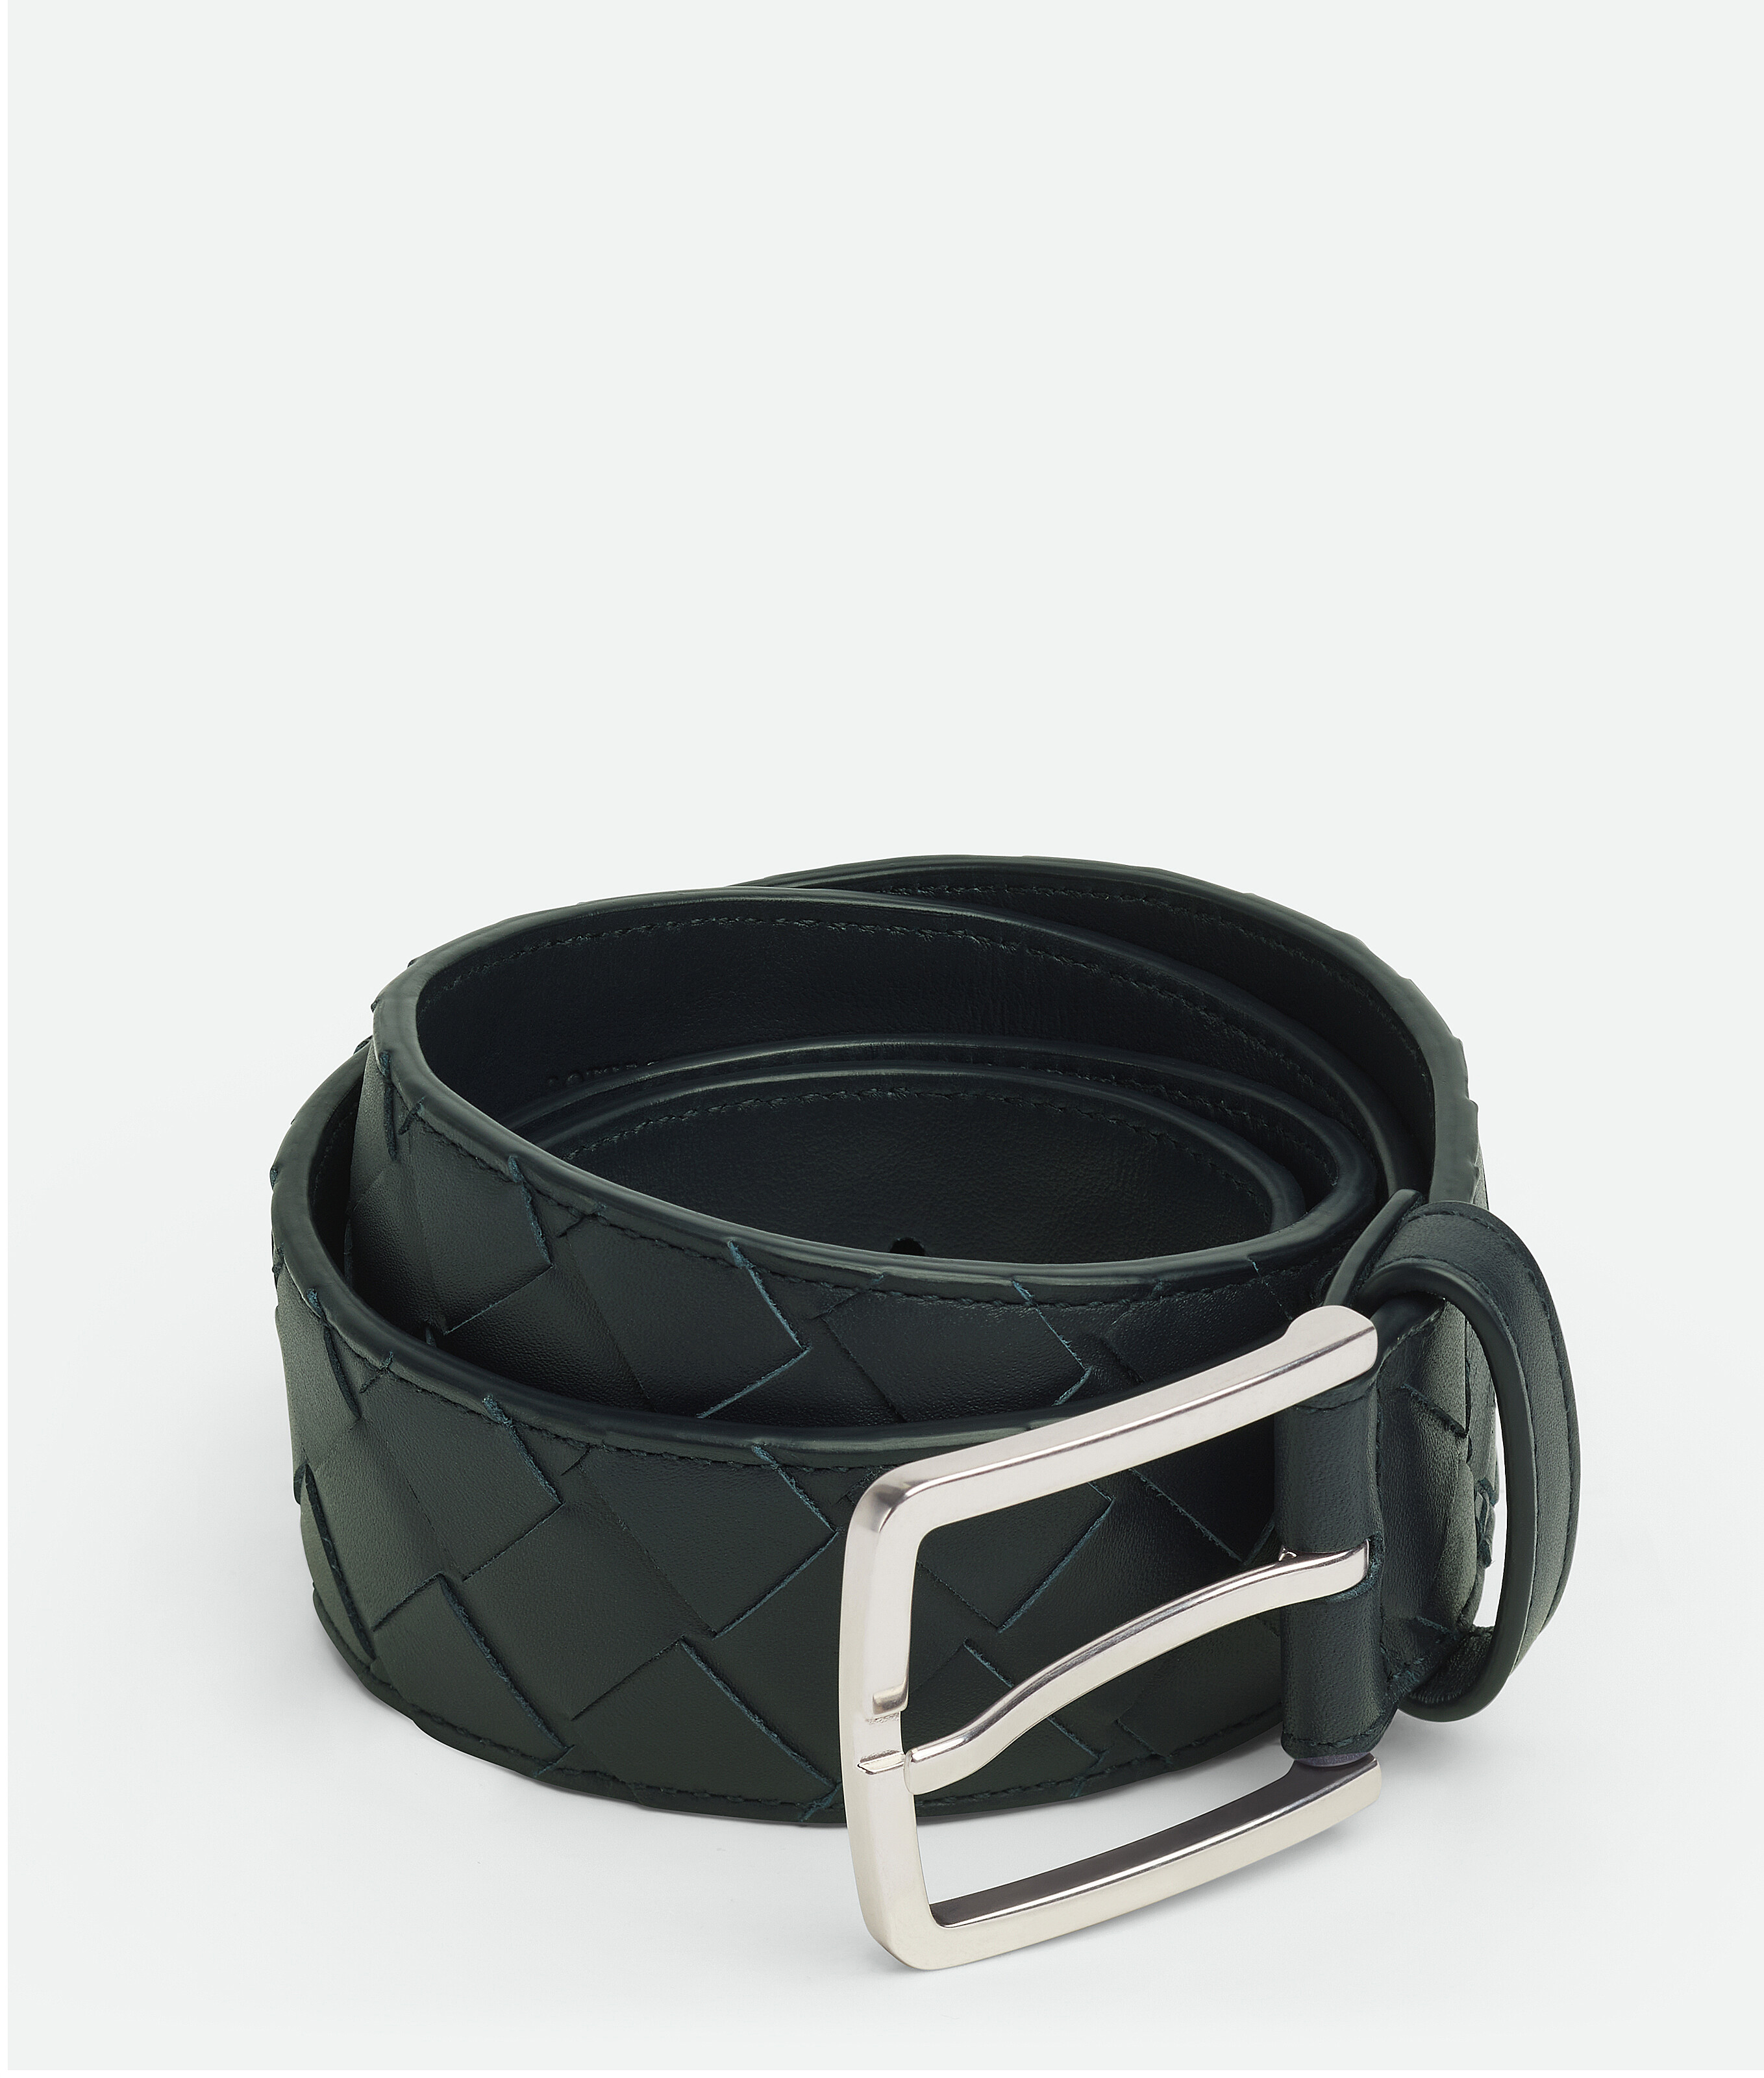 3.5cm New Intreccio Buckle Leather Belt